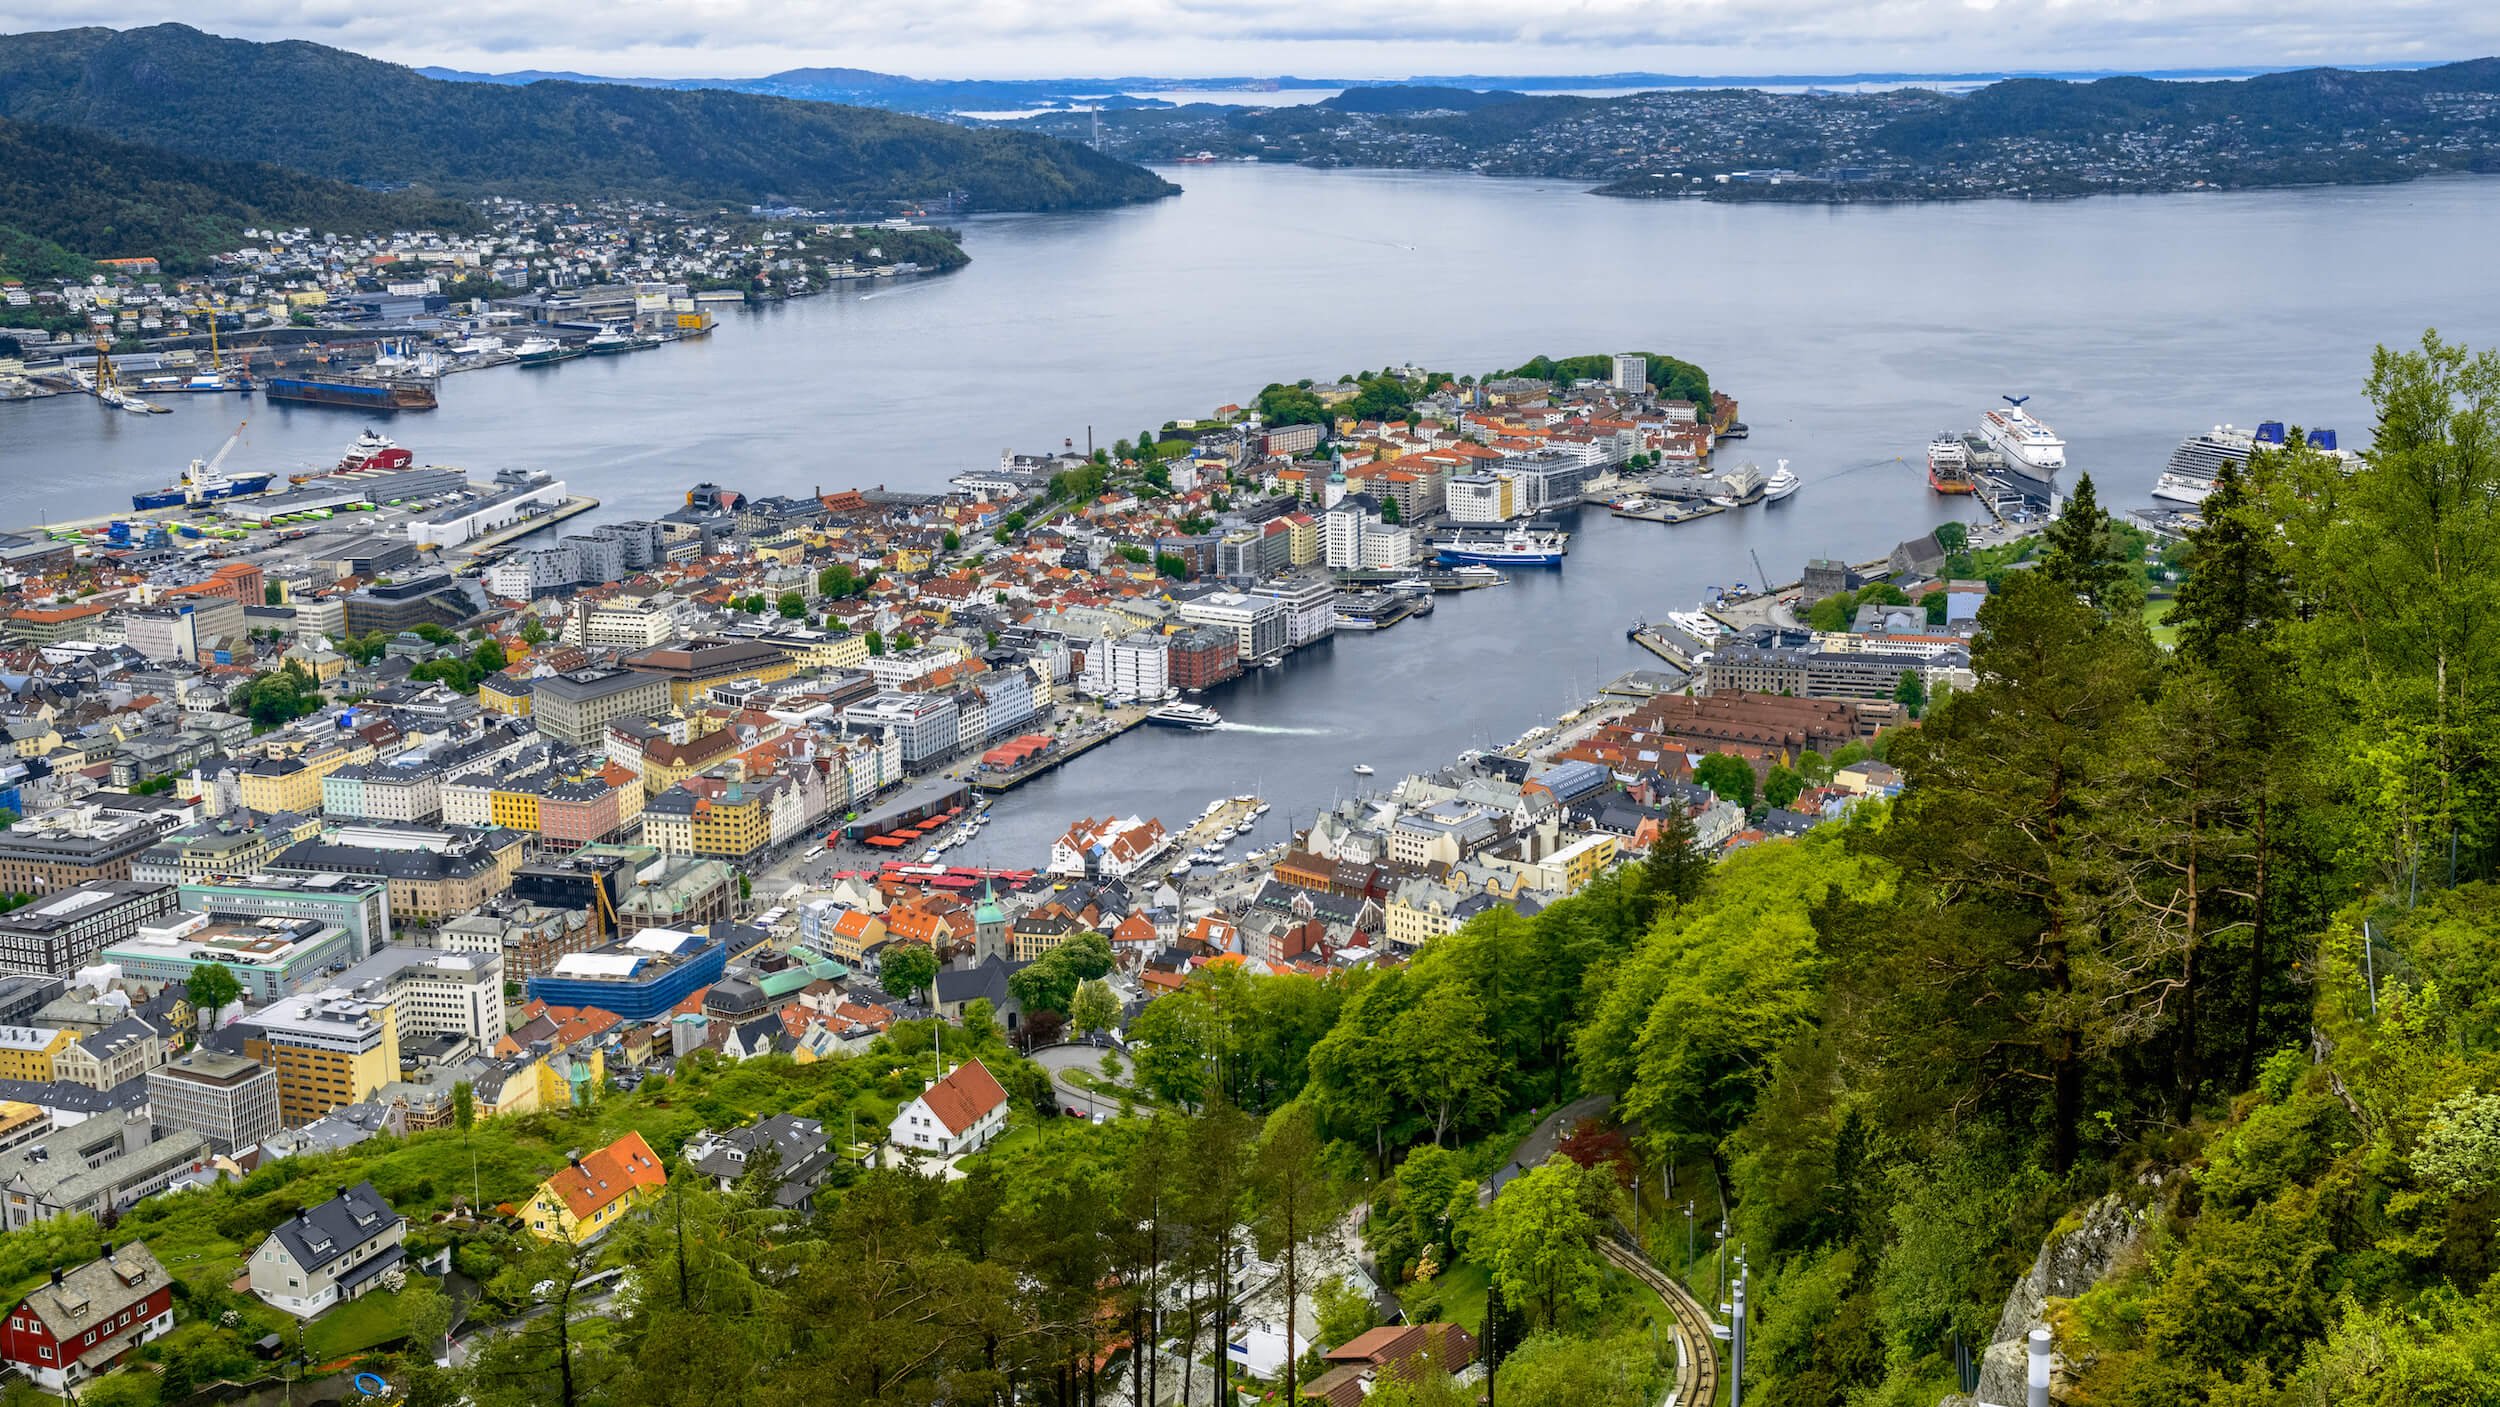 Bergen / Convertini / CC BY-SA 2.0